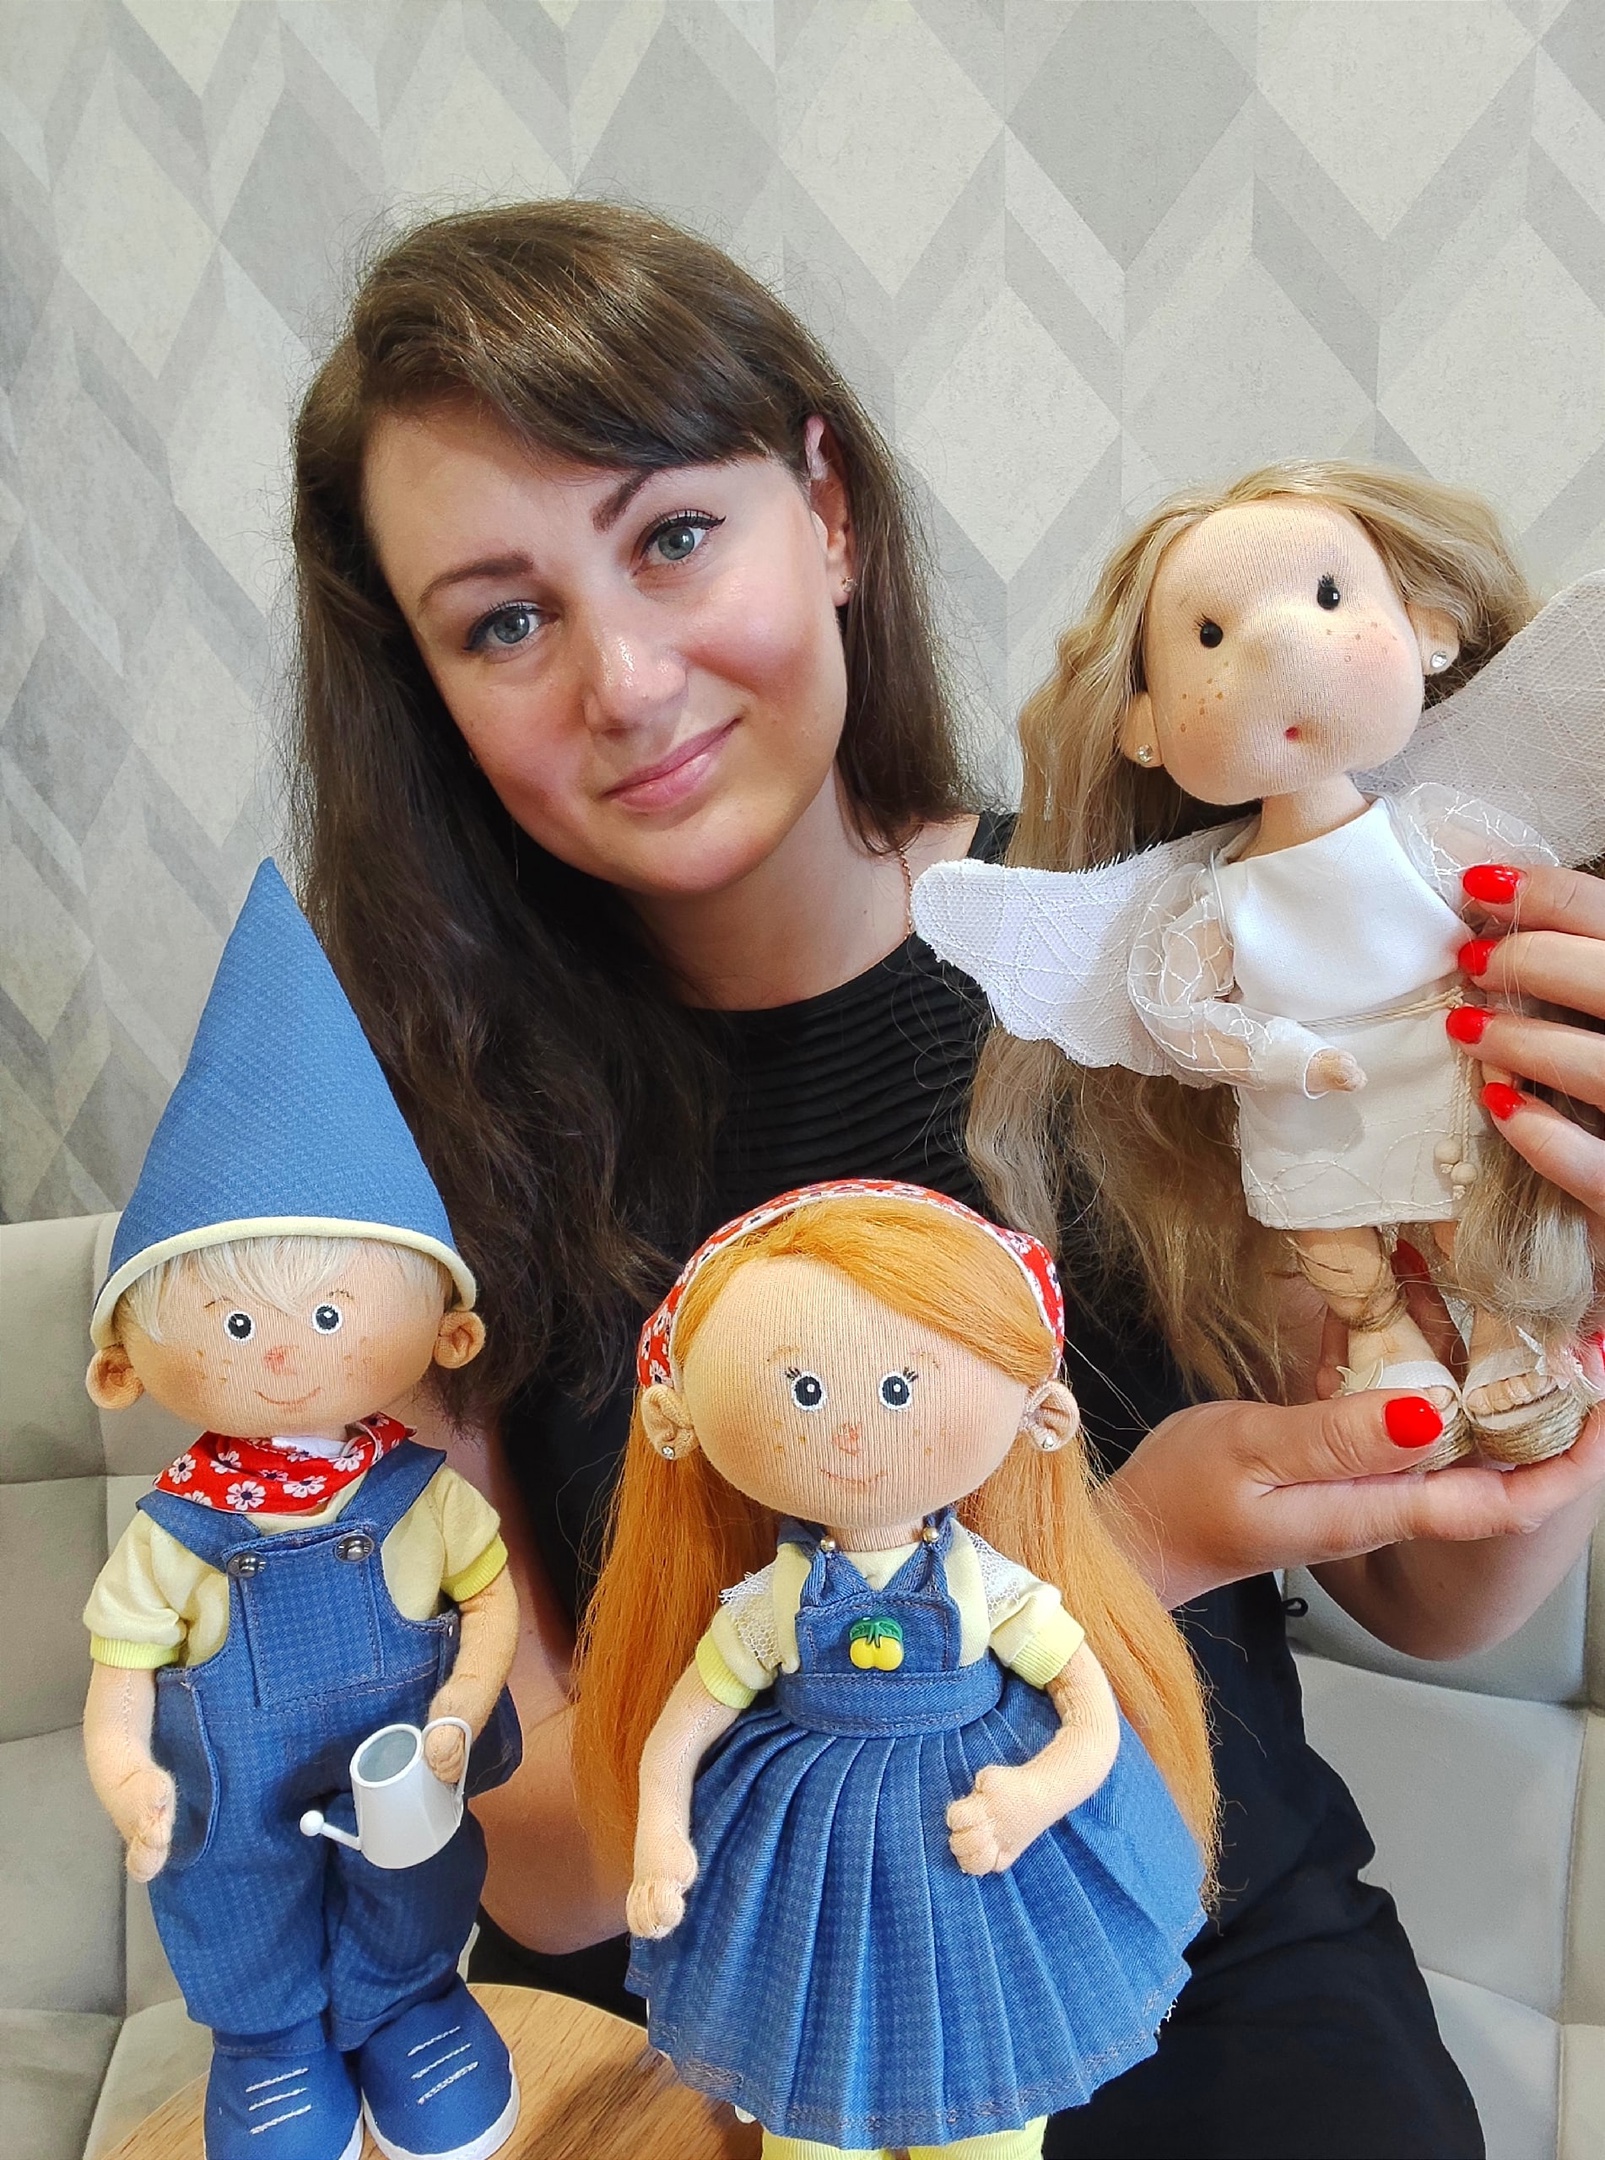 Как сшить куклу: 15 мастер-классов + БОНУС по росписи лица текстильной куклы